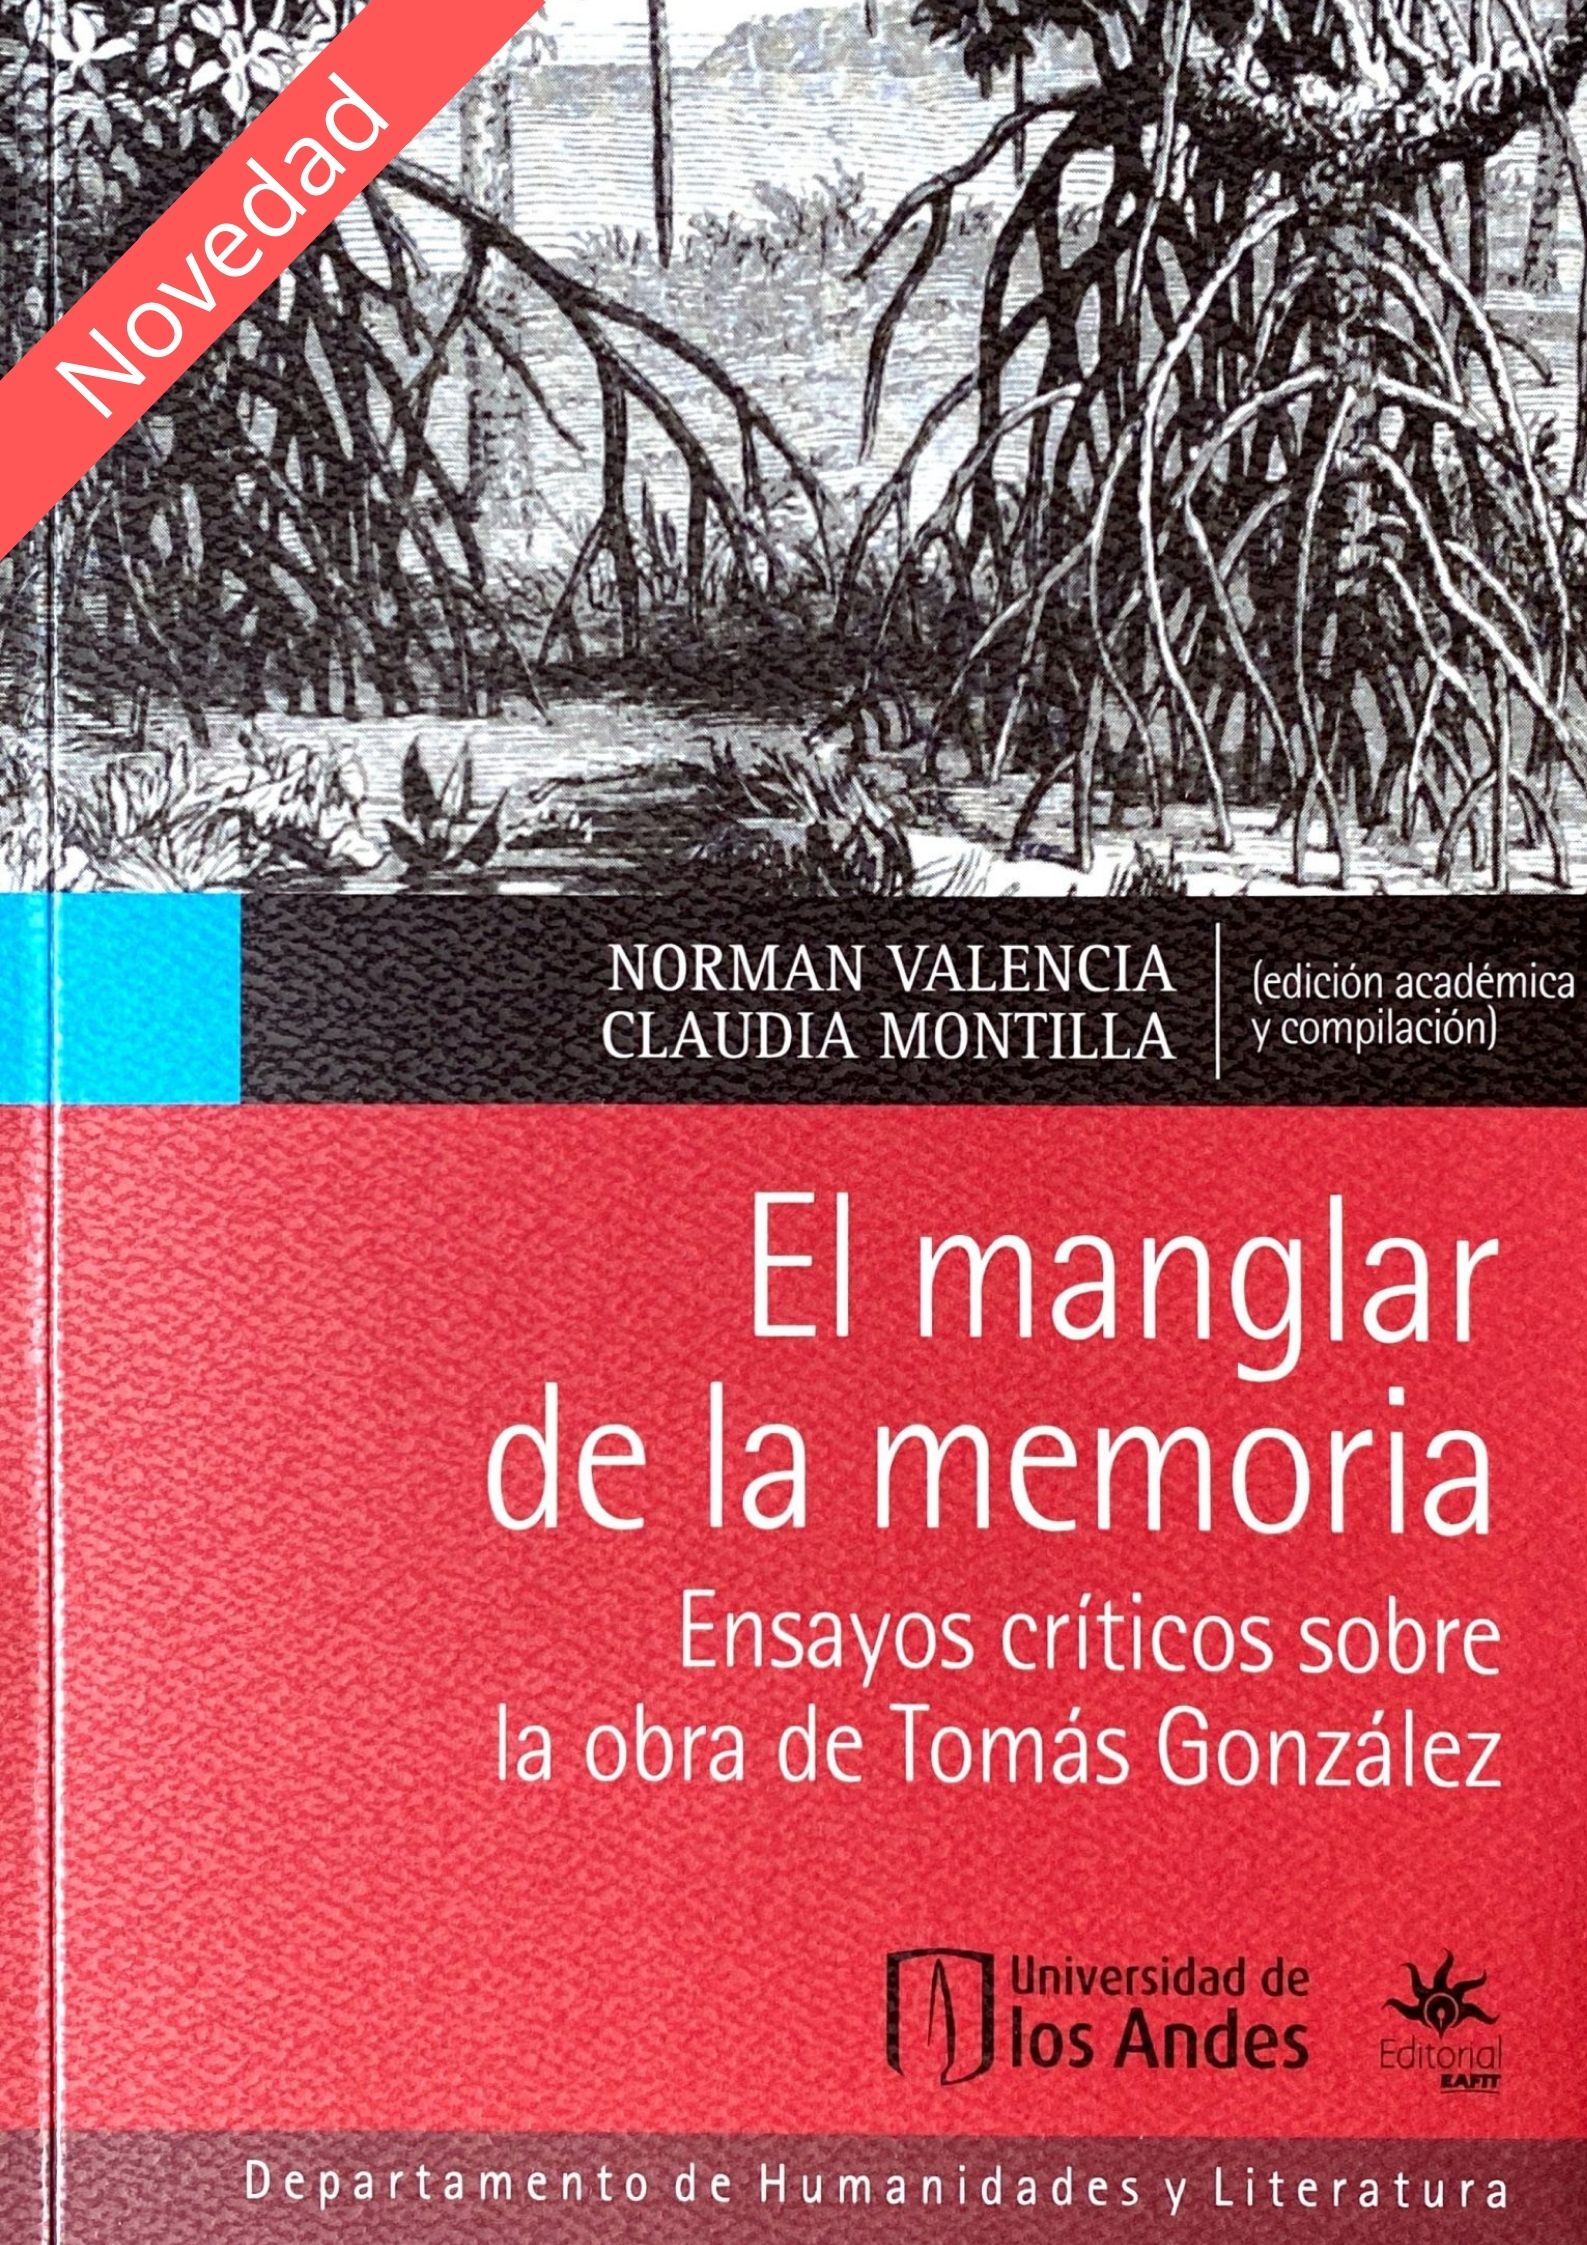 El manglar de la memoria. Ensayos críticos sobre la obra de Tomás González